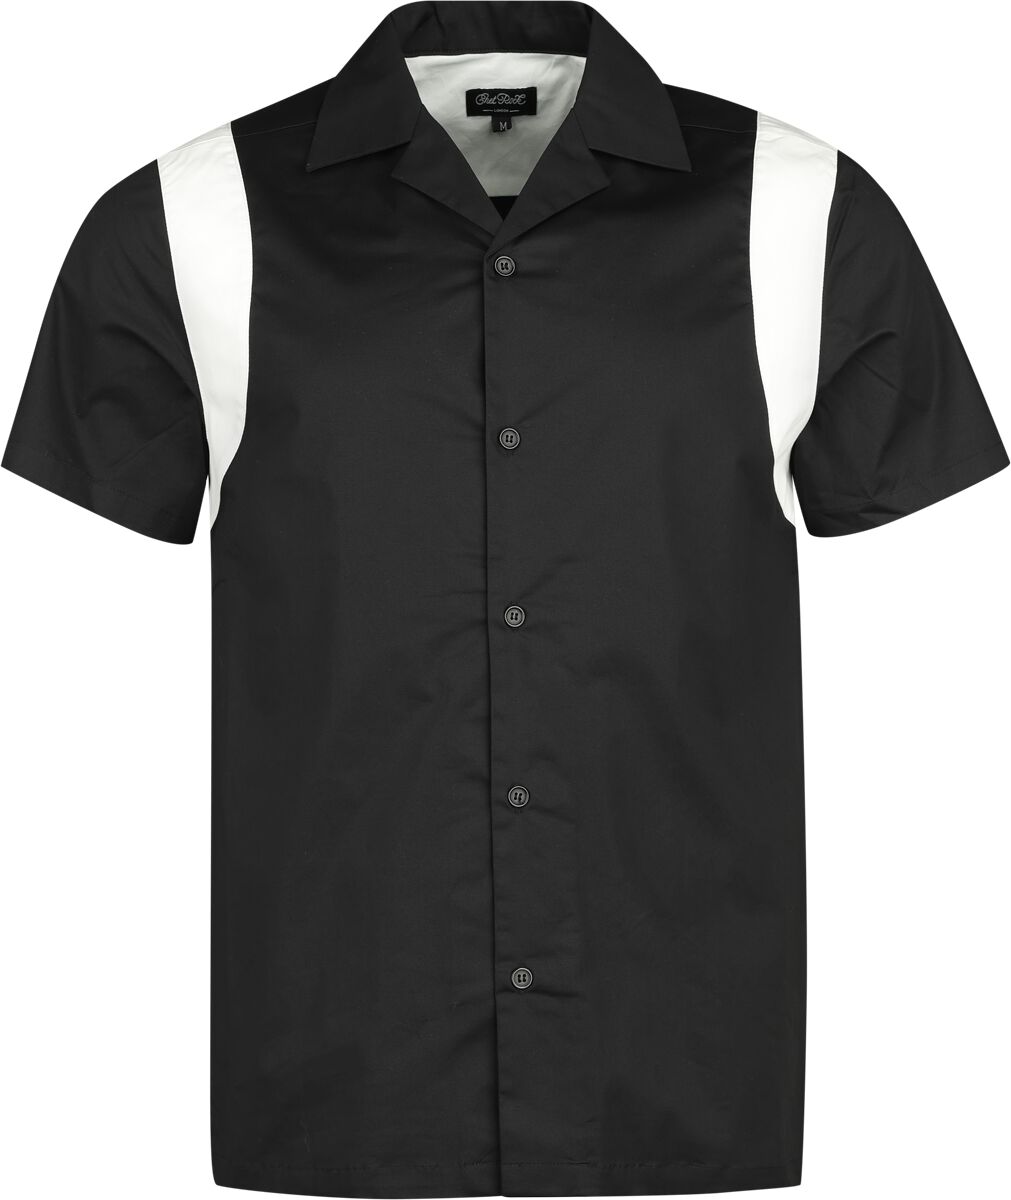 Levně Chet Rock Bowlingová košile Marty Košile cerná/bílá